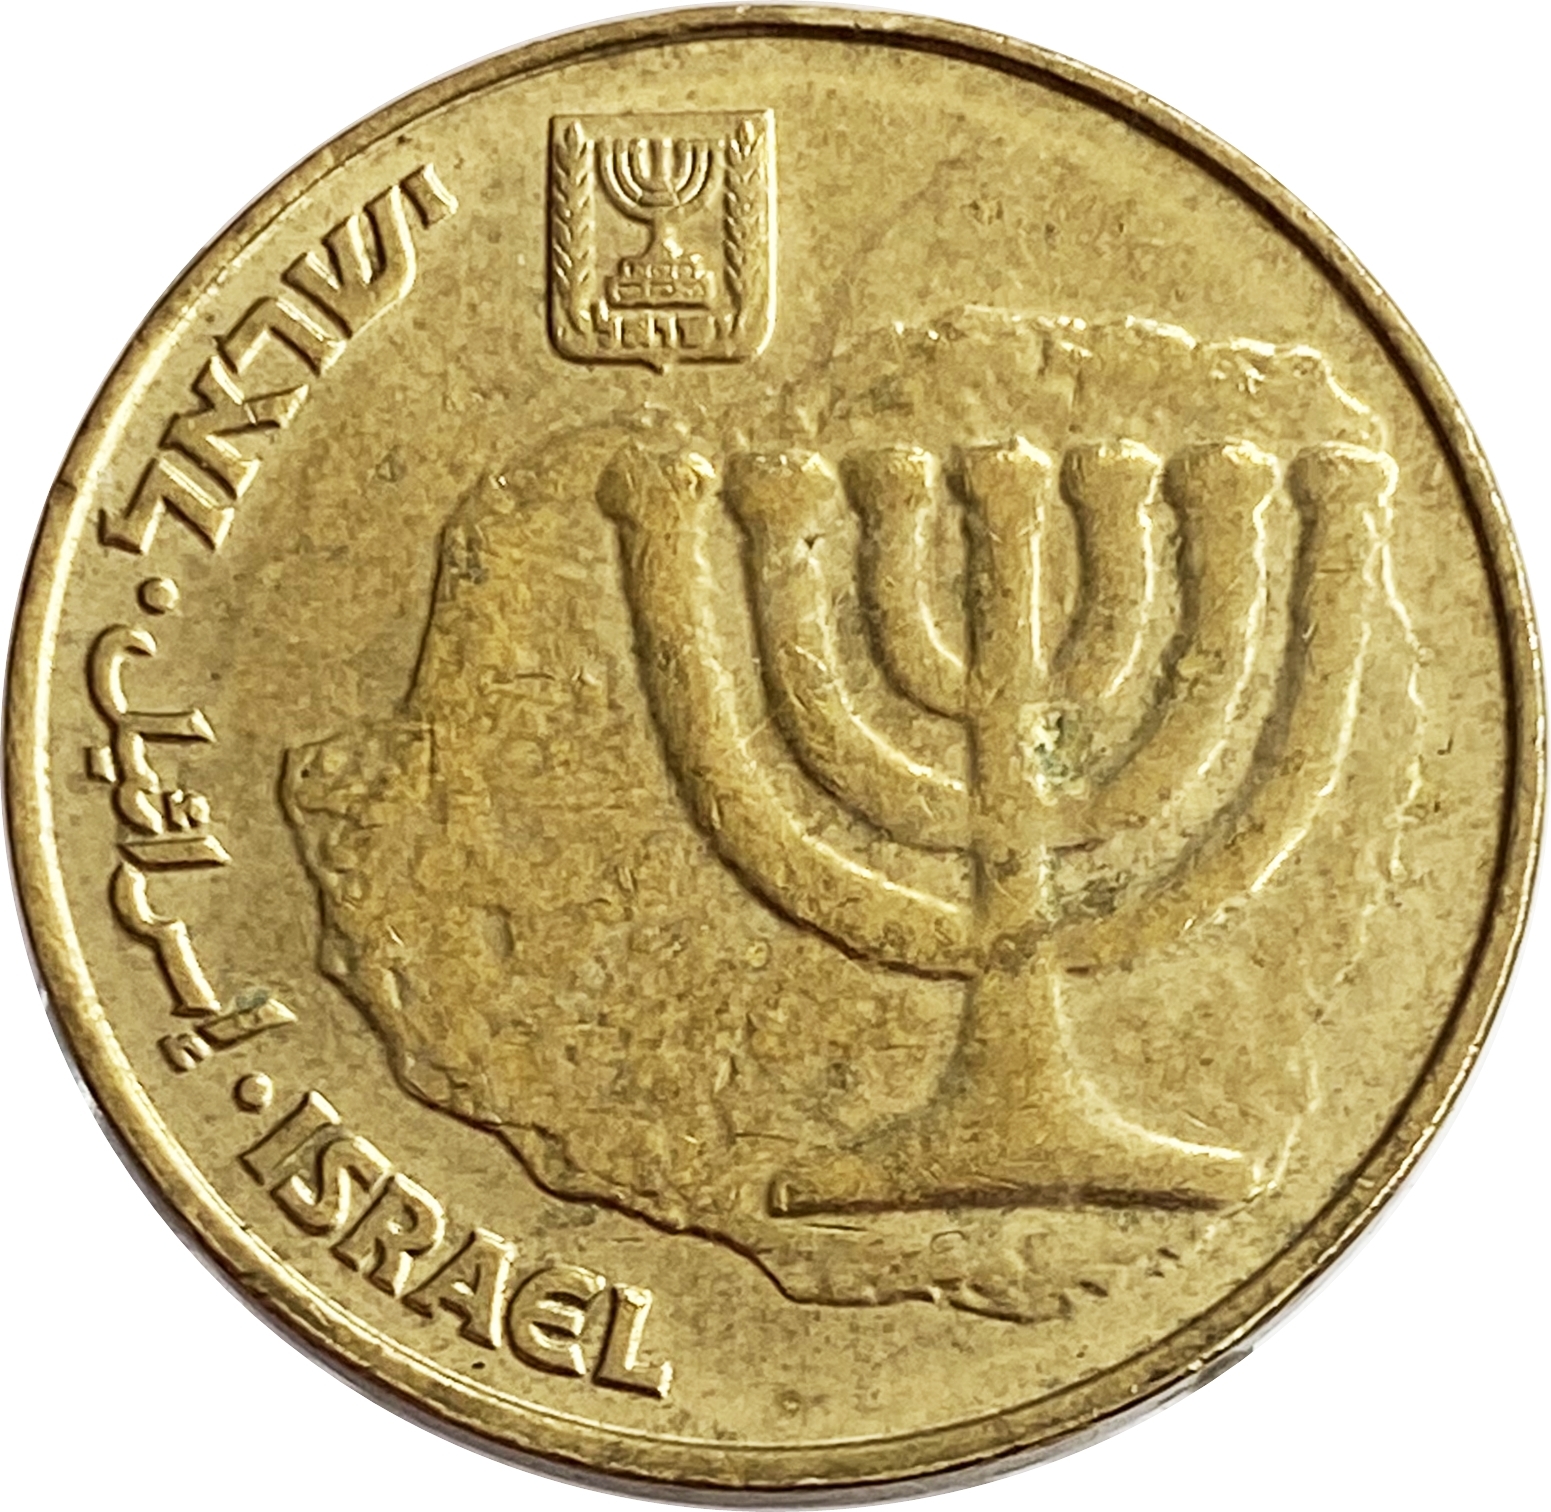 10 еврейских. Монета Израиля 10 агорот 2017.